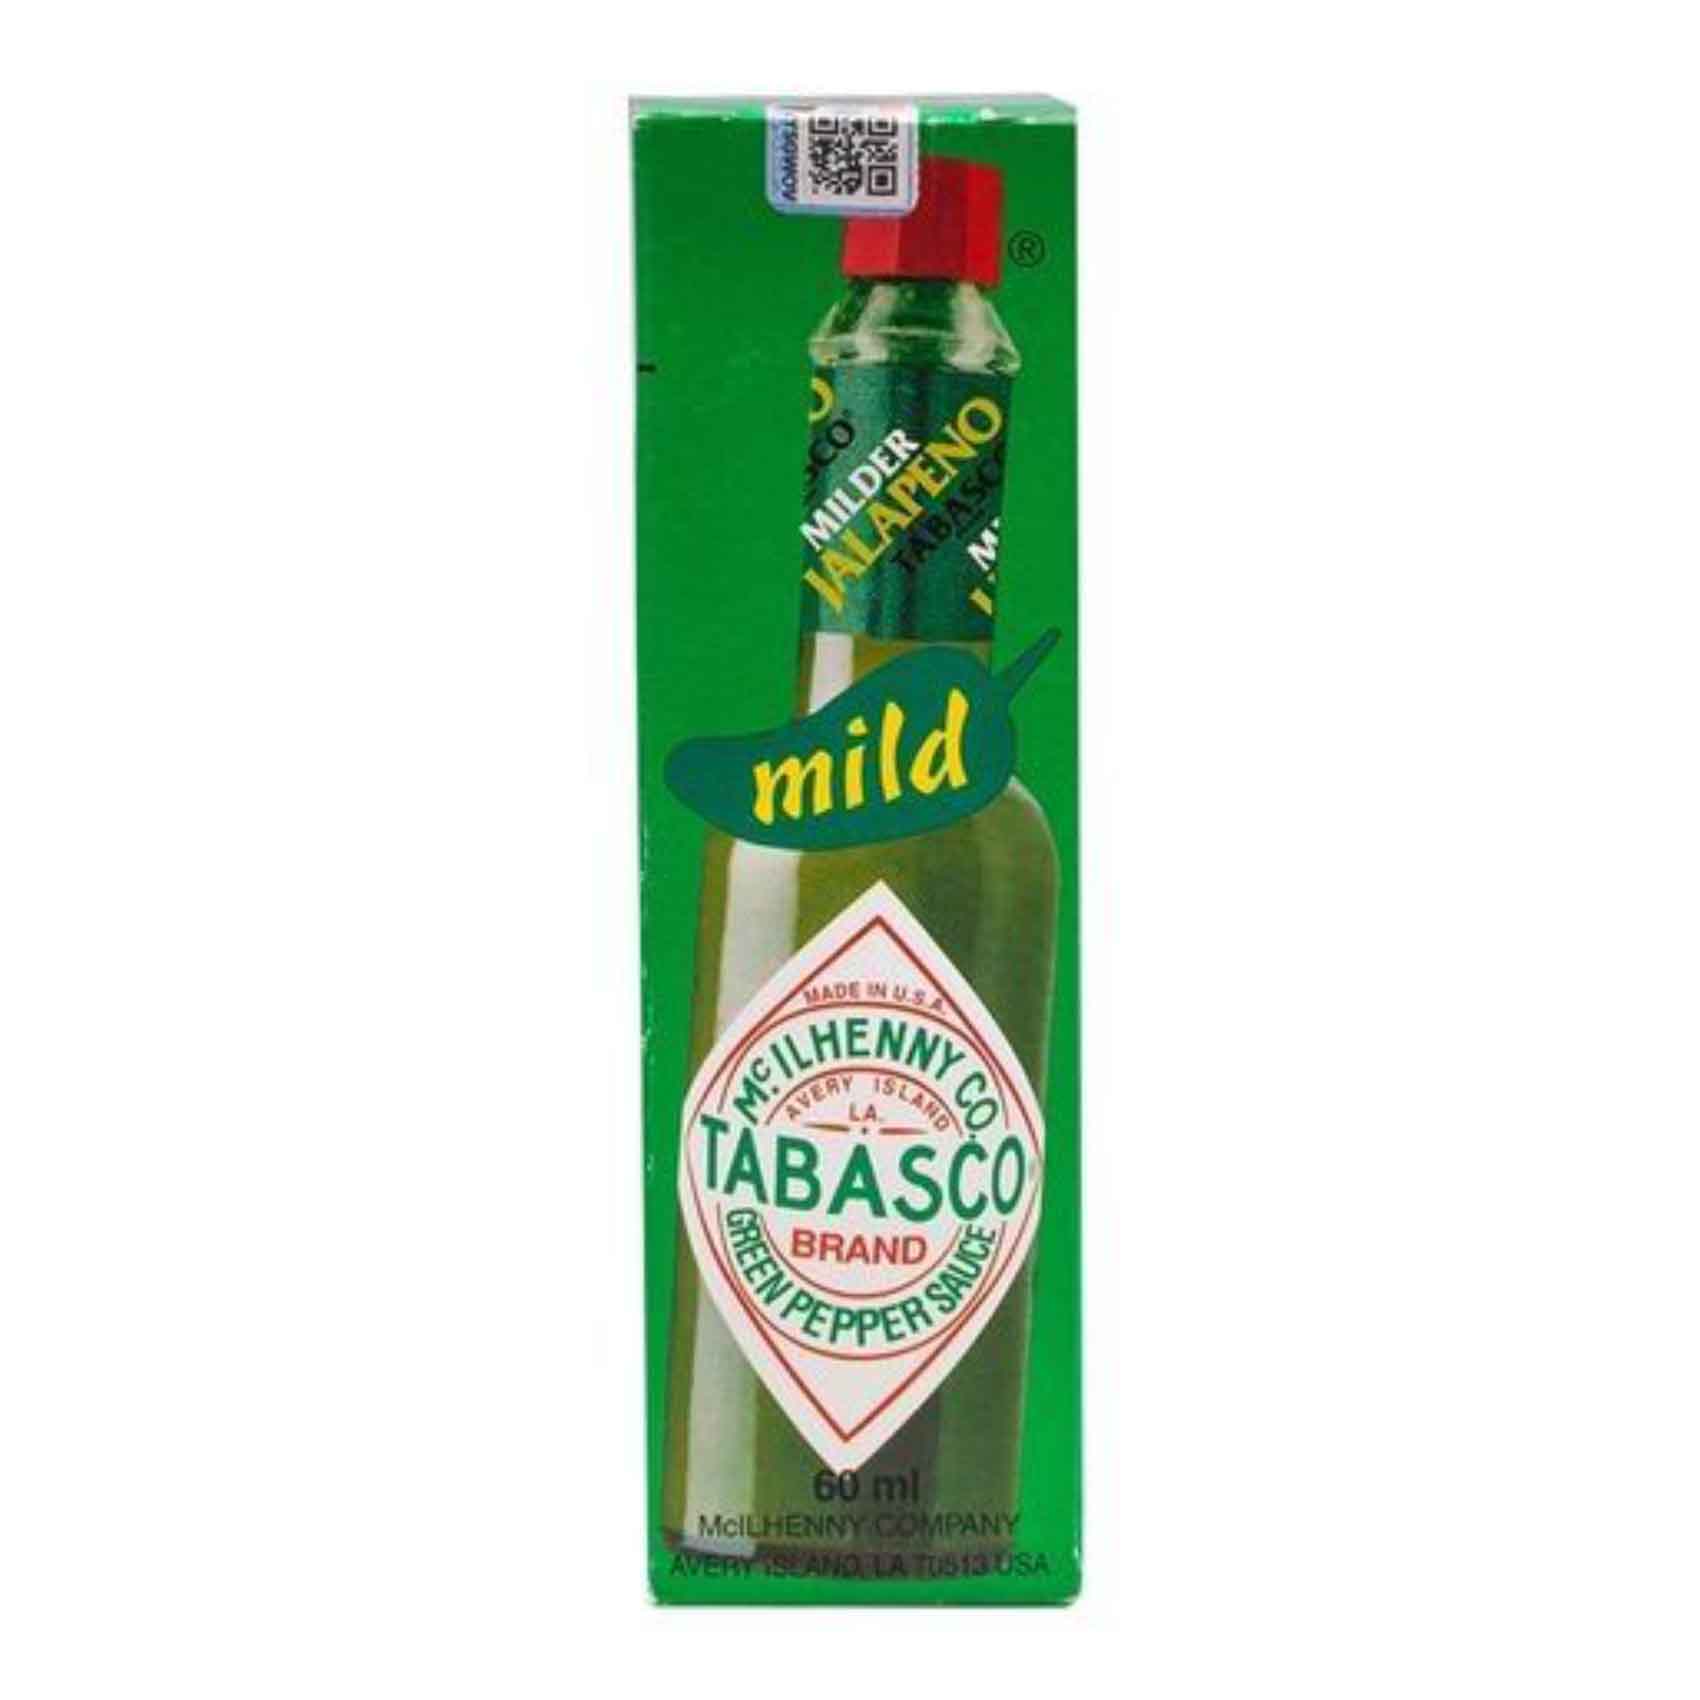 Tabasco Green Pepper Sauce 60Ml